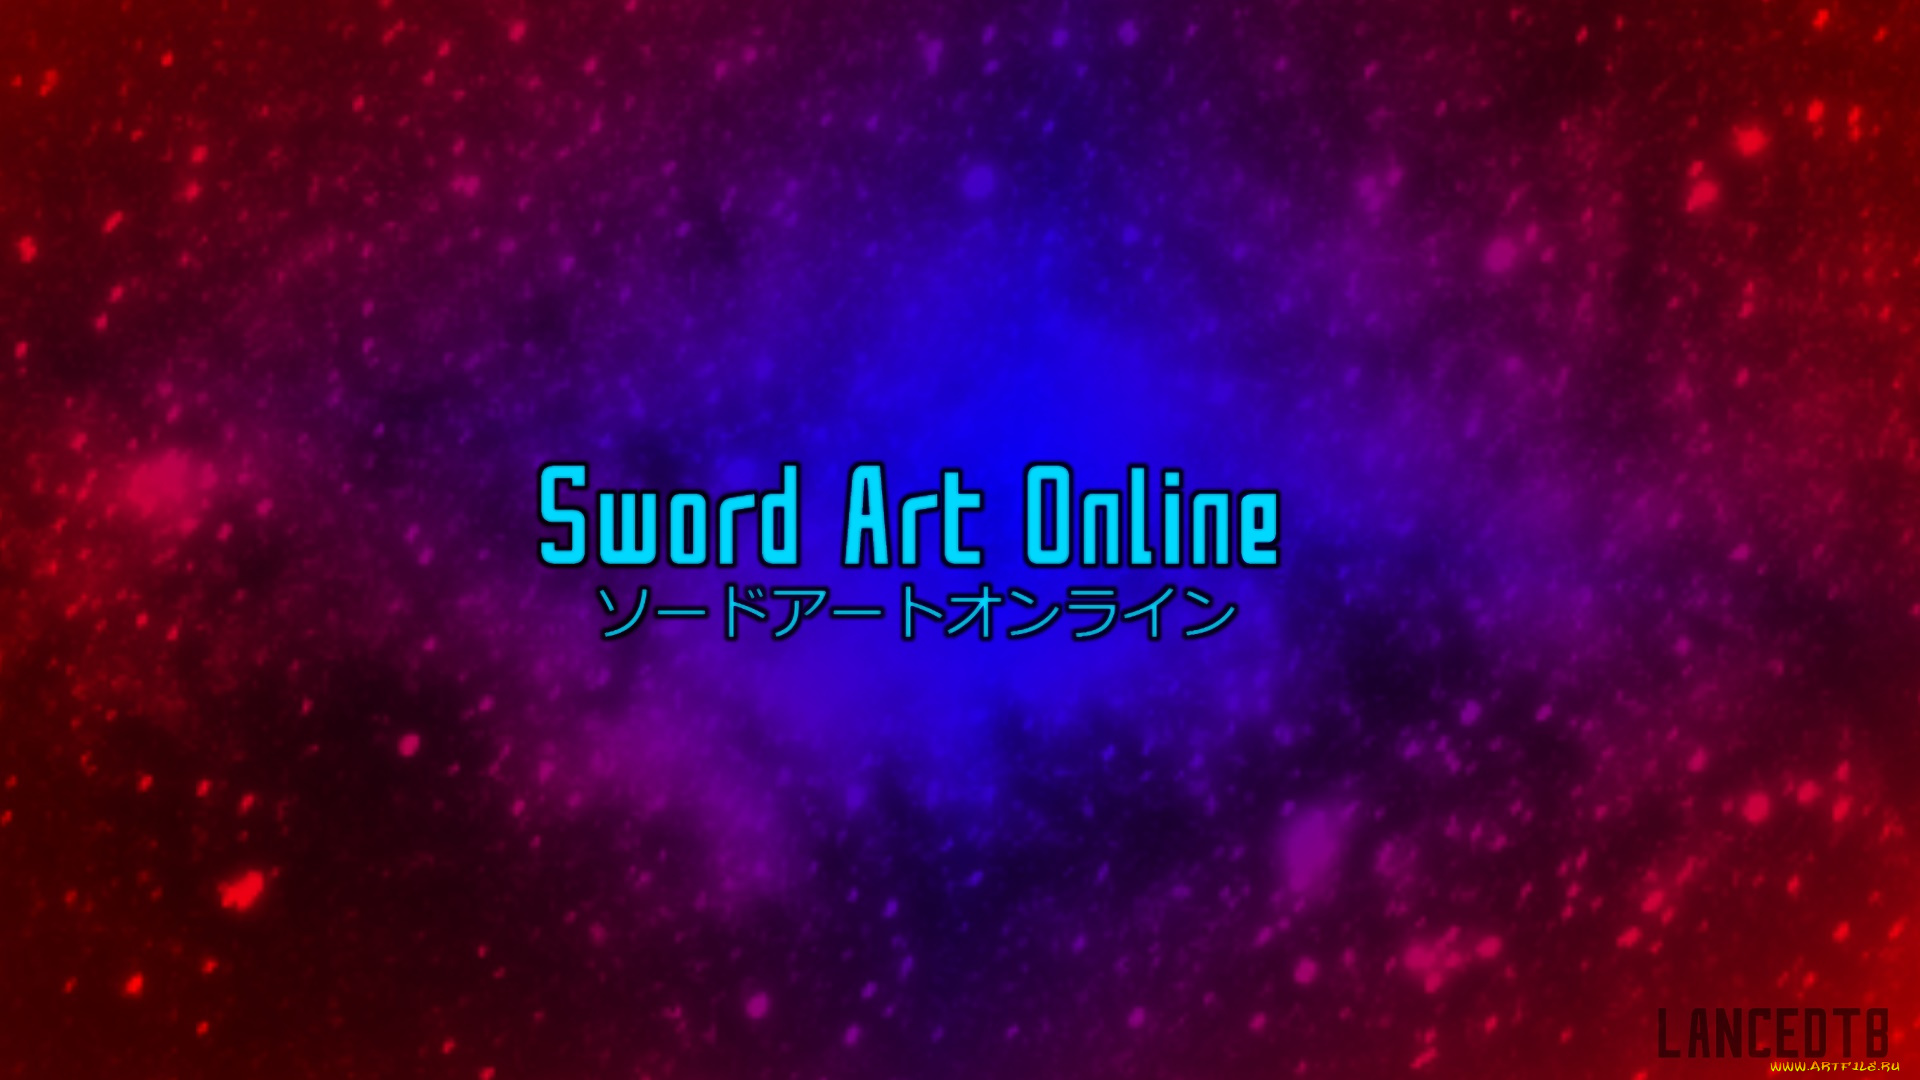 аниме, sword, art, online, фон, логотип